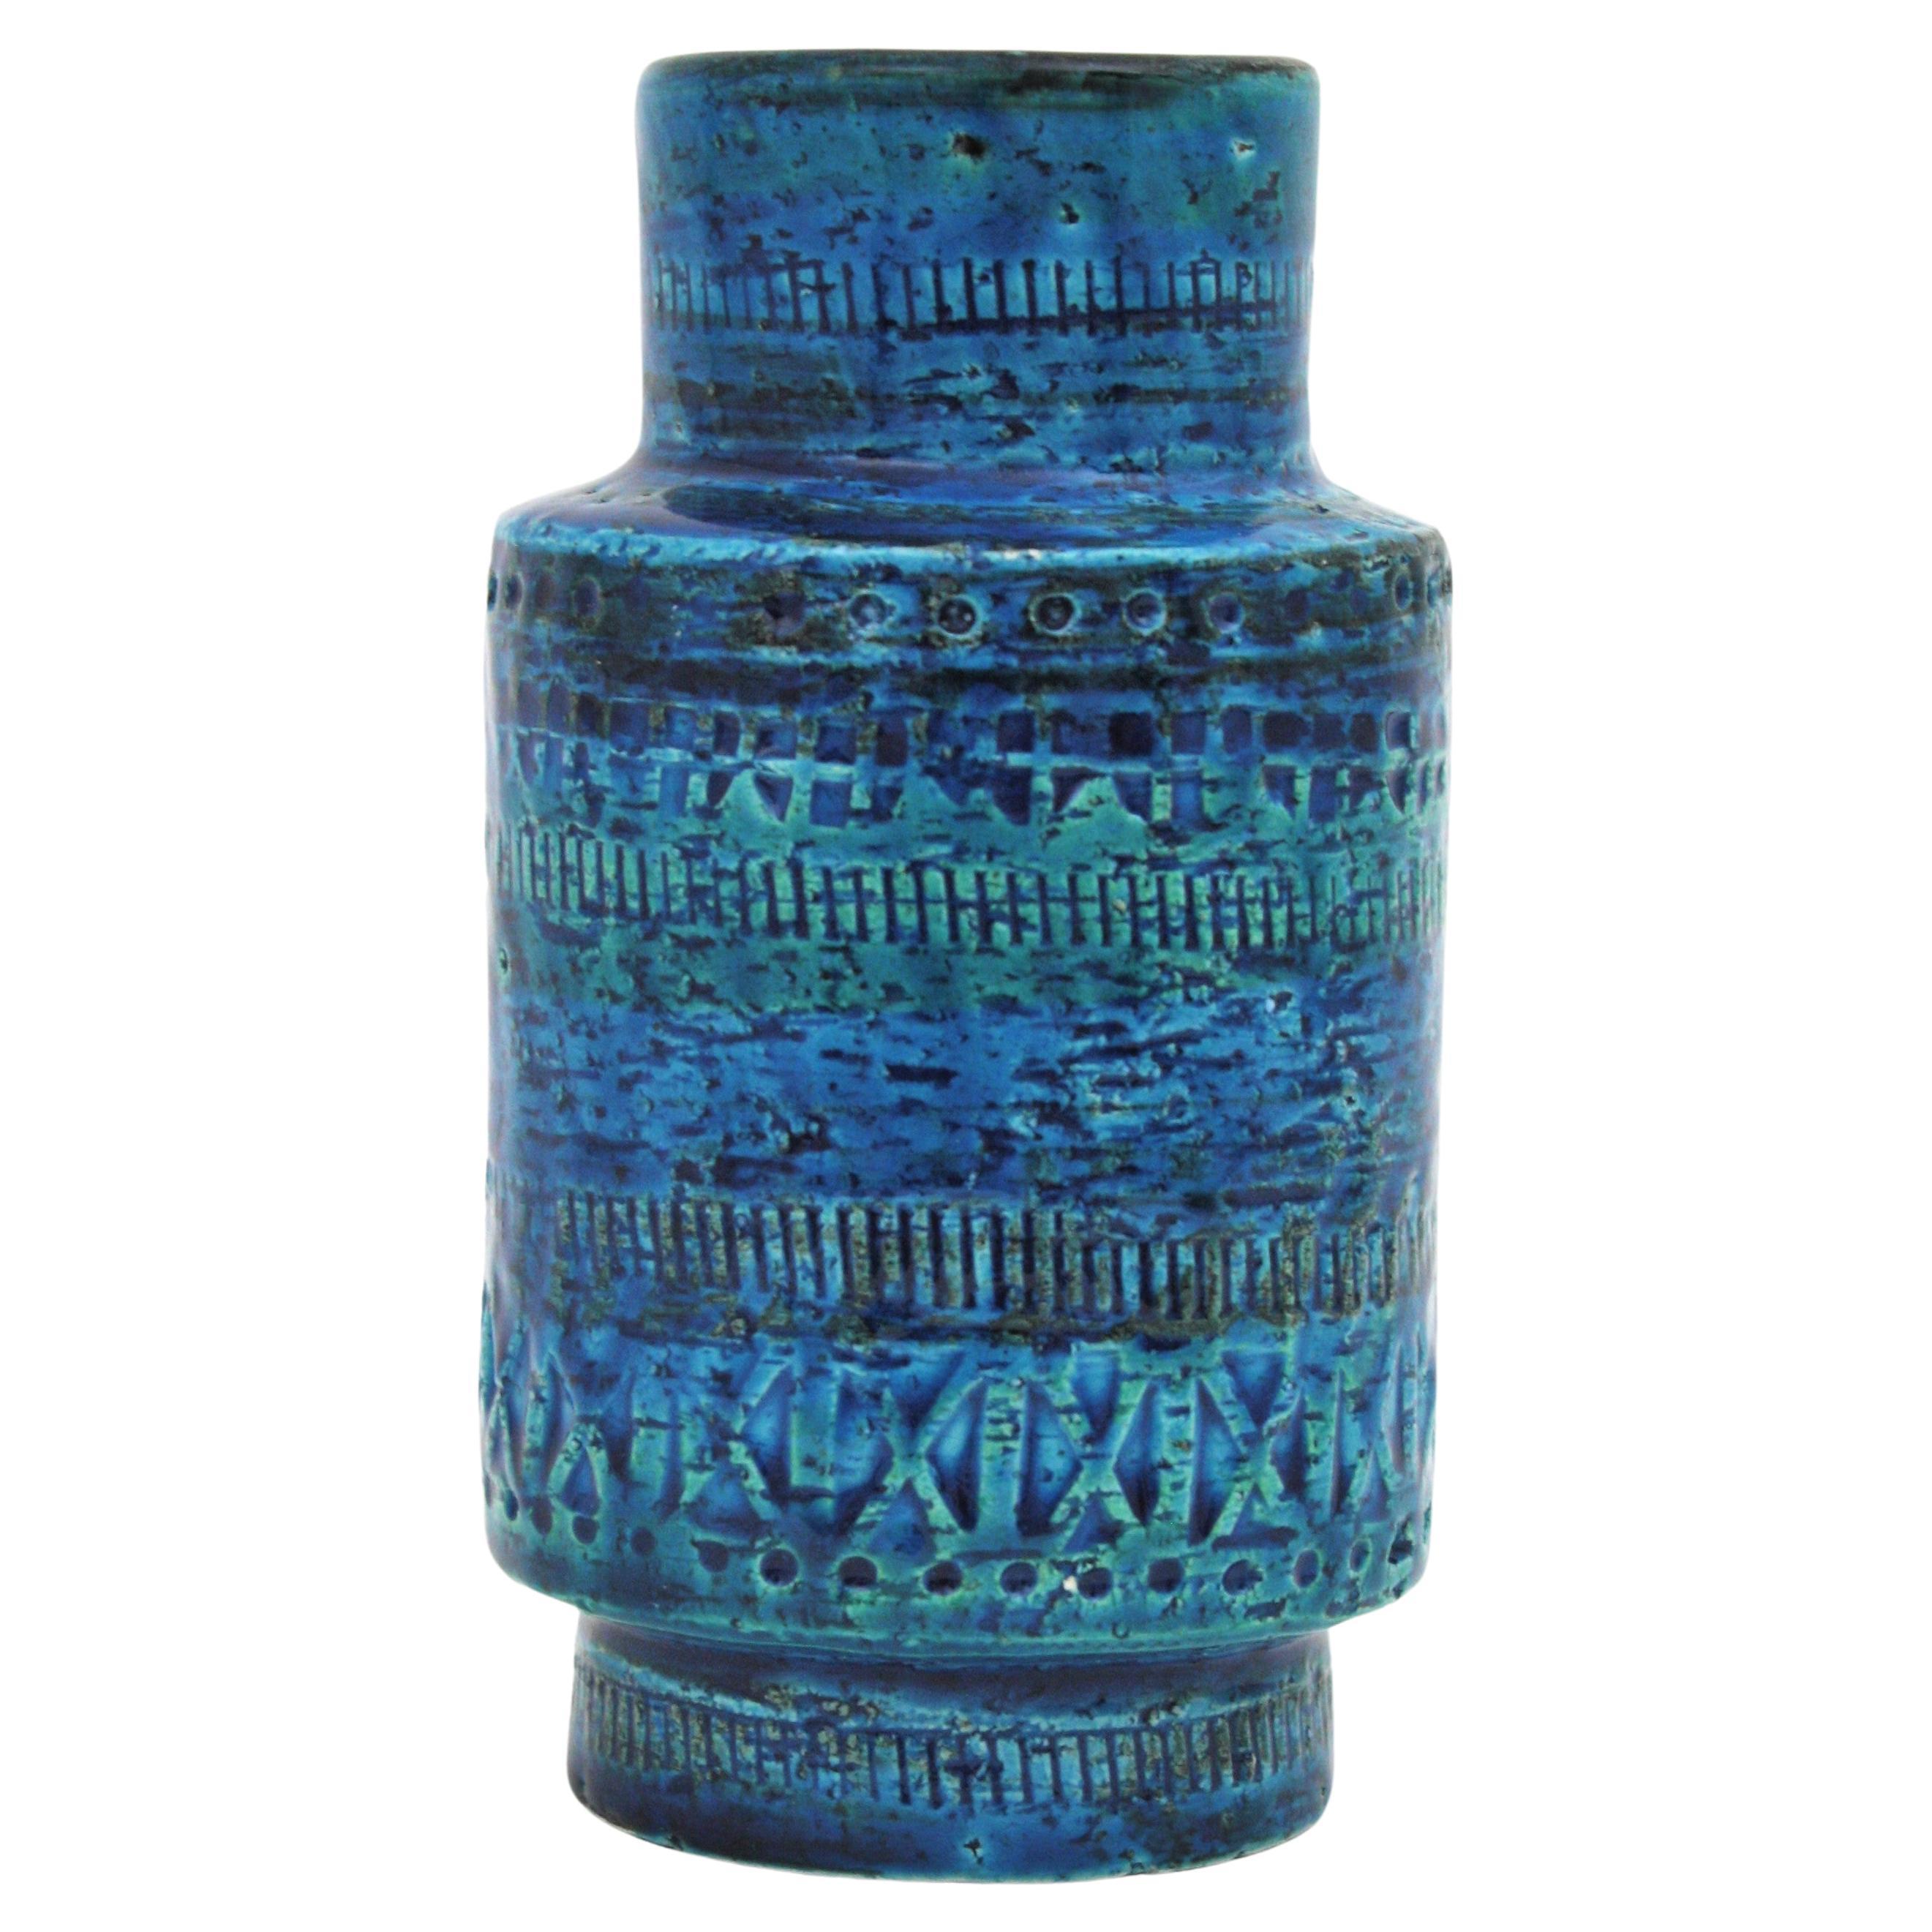 Bitossi Aldo Londi Rimini Blaue Keramikvase, 1960er Jahre